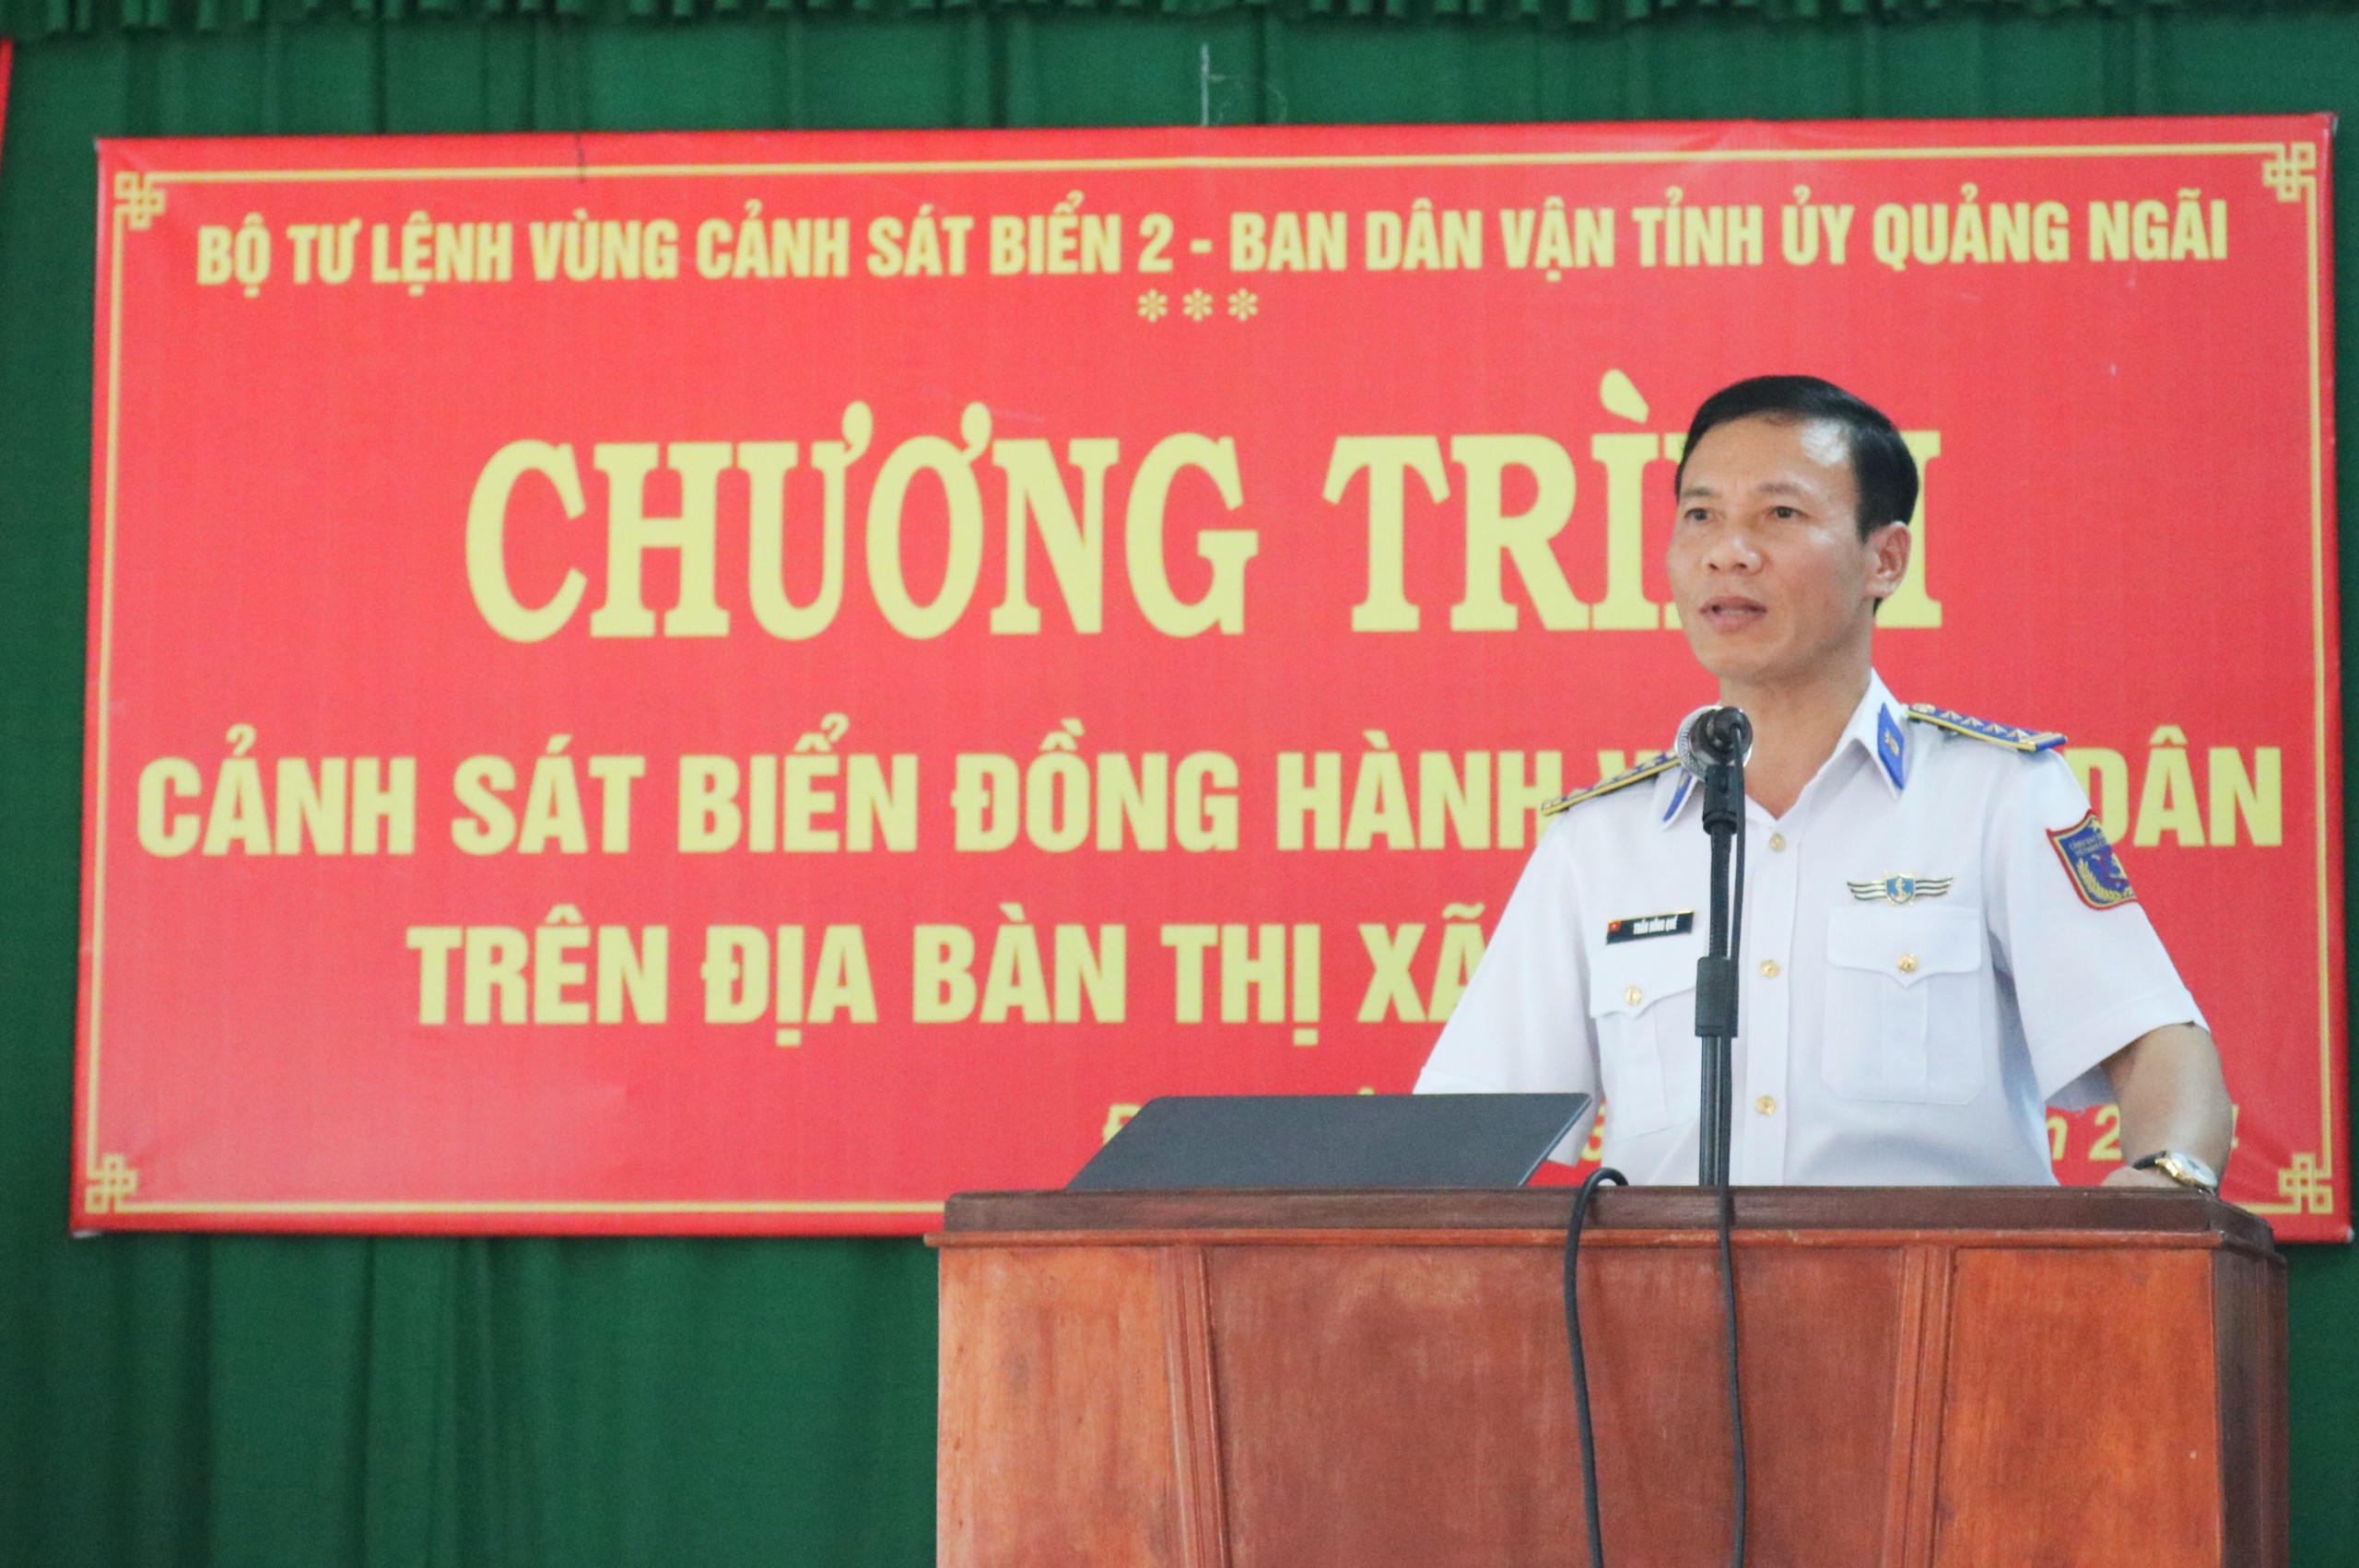 Chương trình “Cảnh sát biển đồng hành với ngư dân” tại xã Phổ Khánh